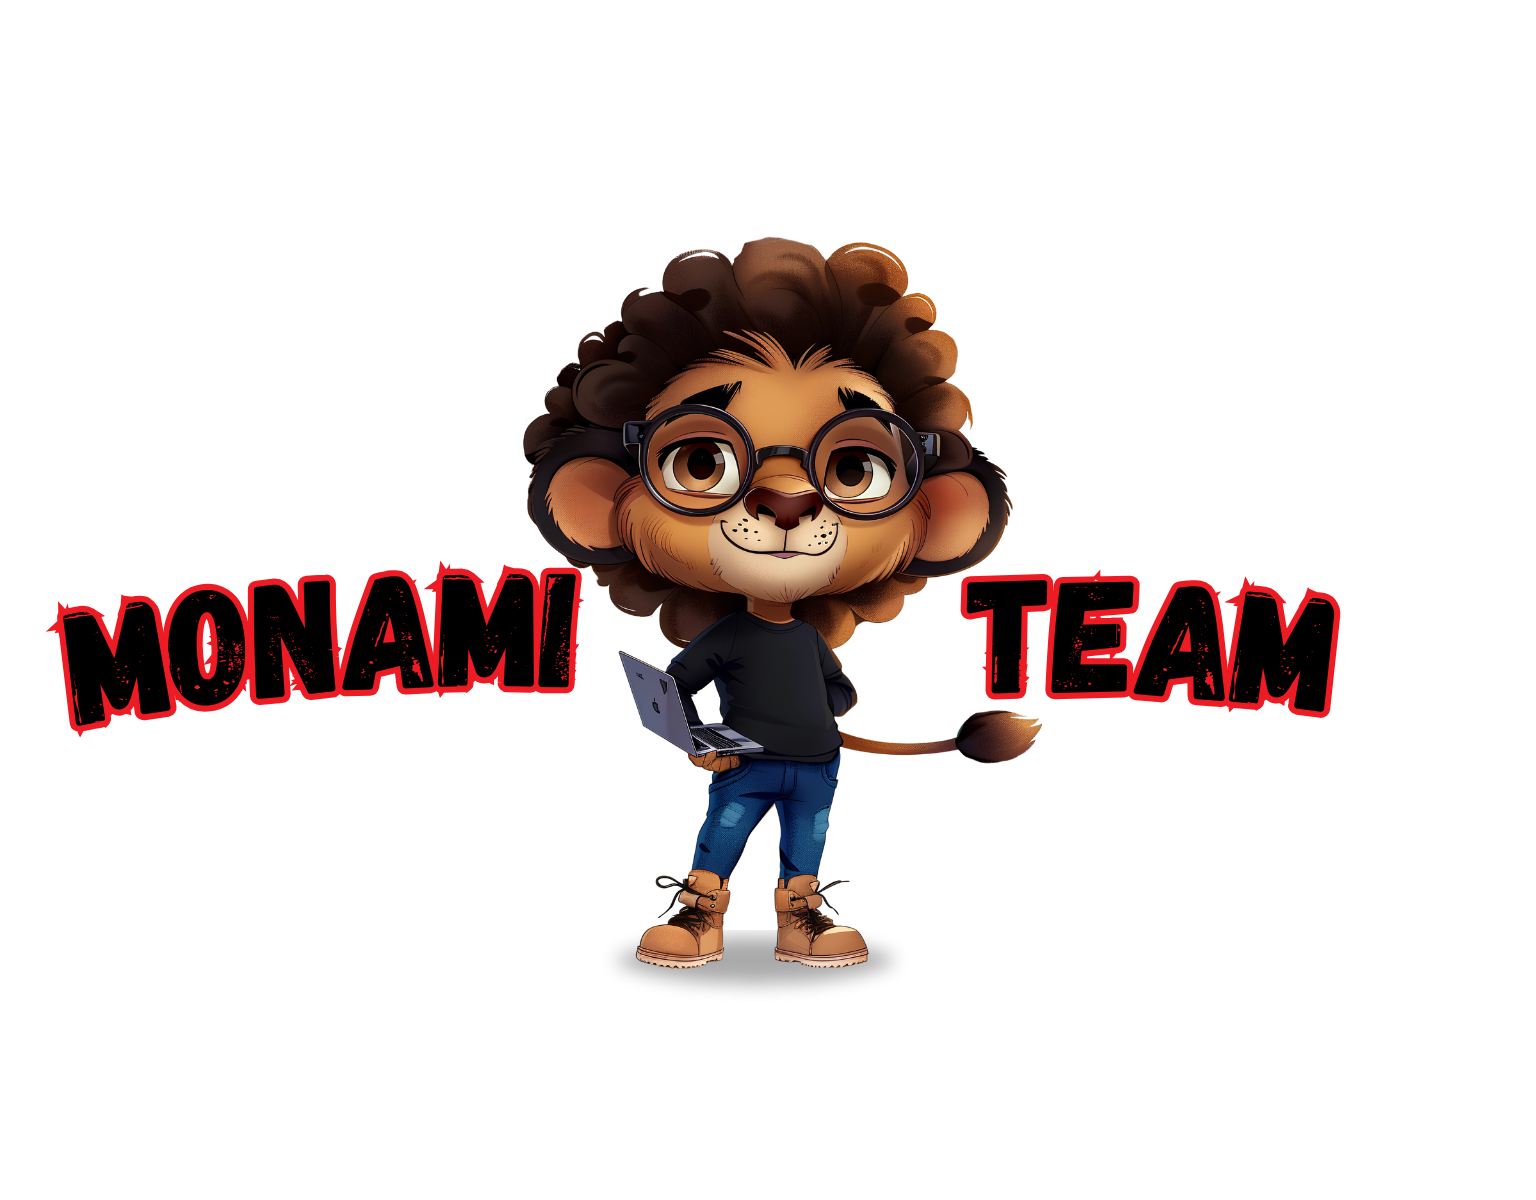 Monami Team